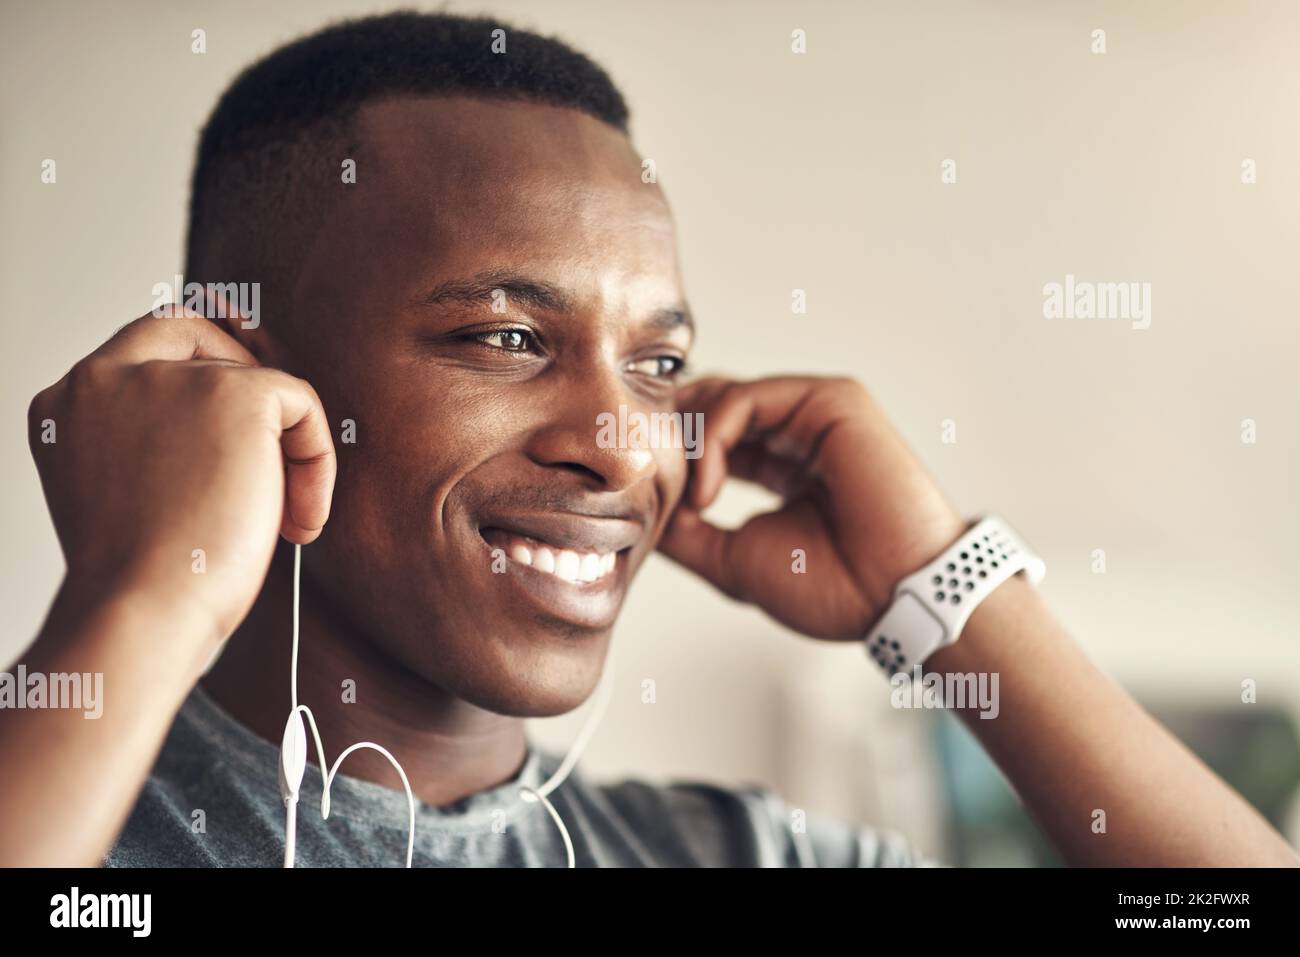 Les bons morceaux me permettent de rester au rythme de l'énergie. Photo d'un jeune sportif qui écoute de la musique tout en s'exerçant à la maison. Banque D'Images